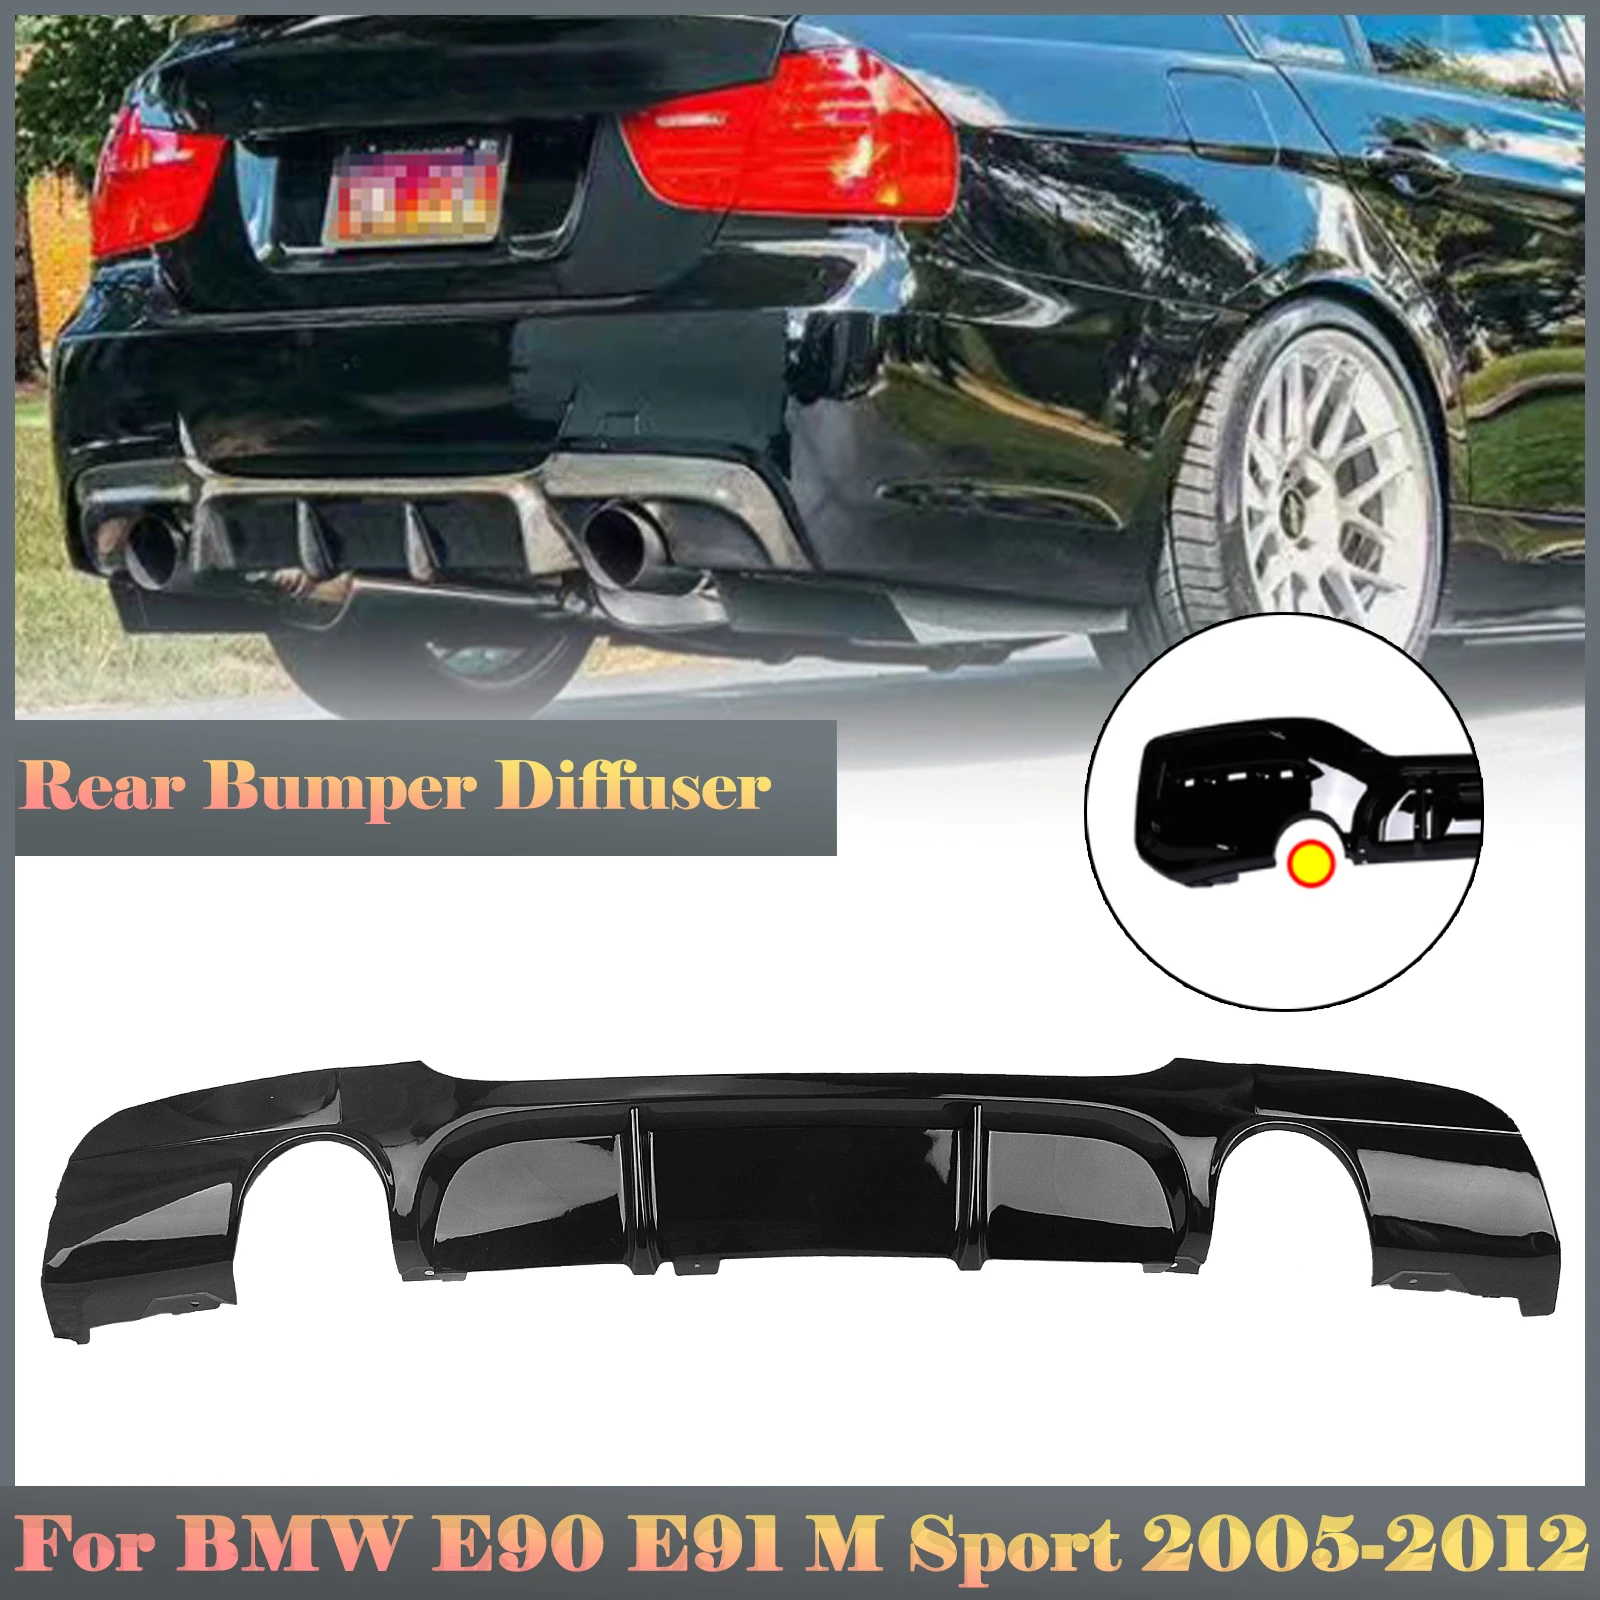 

Для BMW 3 серии E90 E91 M Sport 2005-2012 Седан 4-дверный 325i 328i диффузор заднего бампера губа глянцевый черный разделитель спойлер пластина